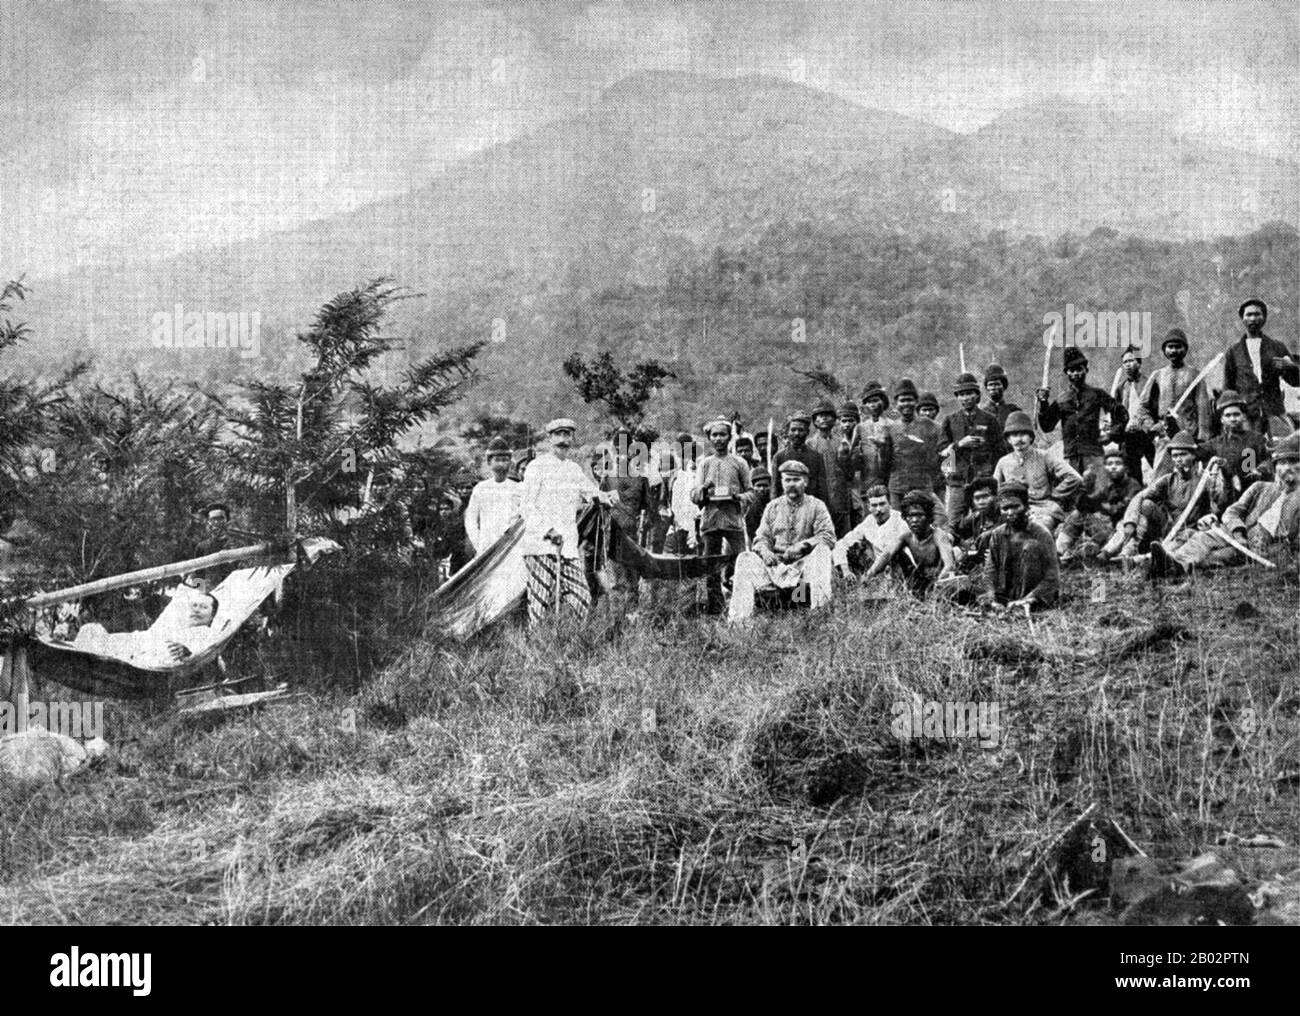 La guerre d'Aceh, également connue sous le nom de guerre néerlandaise ou de guerre Infidale (1873–1914), était un conflit militaire armé entre le Sultanat d'Aceh et les Pays-Bas, déclenché par des discussions entre les représentants d'Aceh et du Royaume-Uni à Singapour au début de 1873. La guerre faisait partie d'une série de conflits à la fin du XIXe siècle qui ont consolidé la domination néerlandaise sur l'Indonésie moderne. Gotfried Coenraad Ernst Frits van Daalen (23 mars 1863 – 22 février 1930) était un lieutenant-général de l'Armée royale néerlandaise des Indes de l'est (Eurasie) qui a servi dans les Indes de l'est. Camionnette Banque D'Images